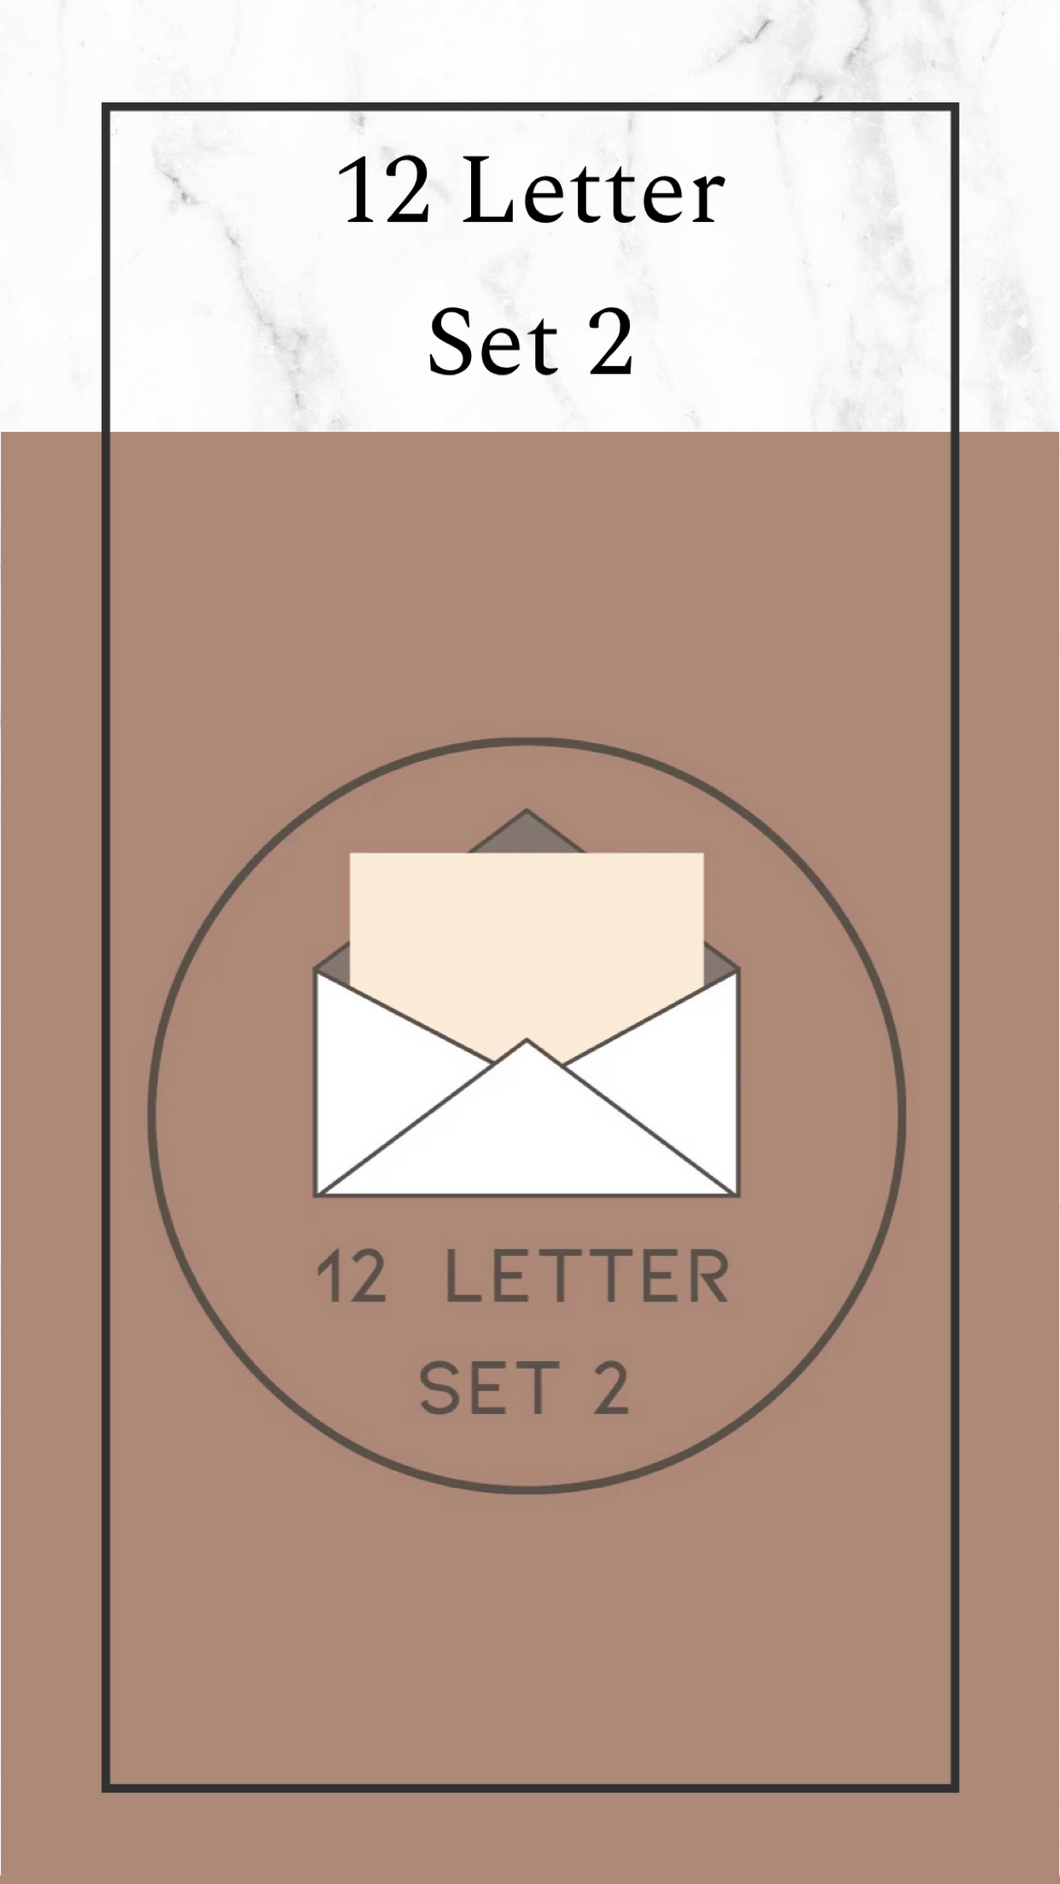 12 Letter Set 2